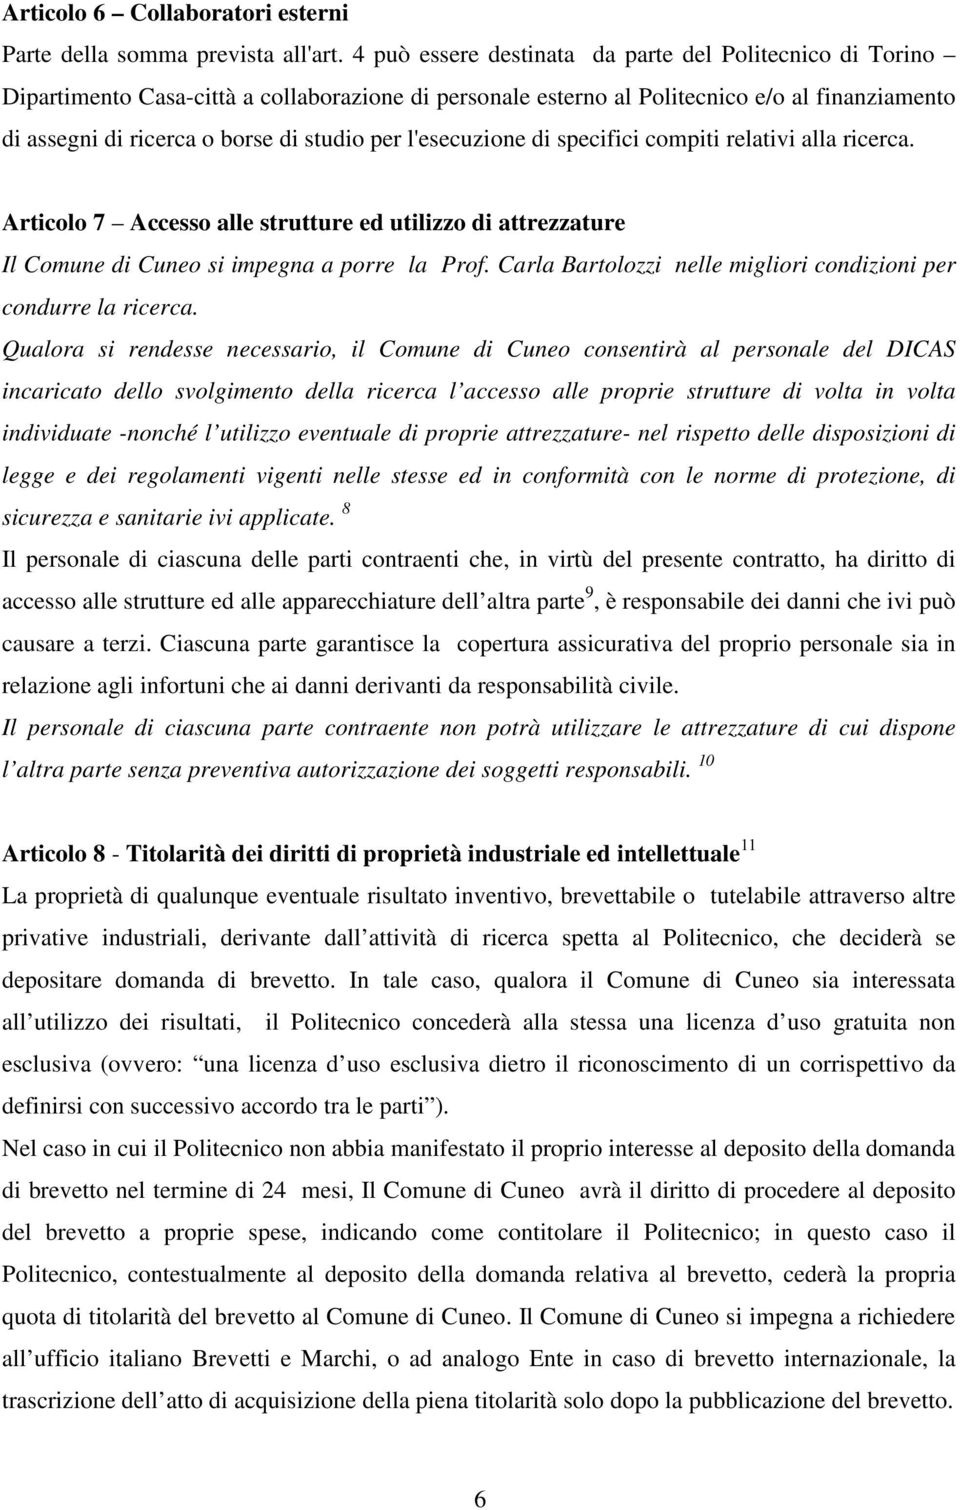 l'esecuzione di specifici compiti relativi alla ricerca. Articolo 7 Accesso alle strutture ed utilizzo di attrezzature Il Comune di Cuneo si impegna a porre la Prof.